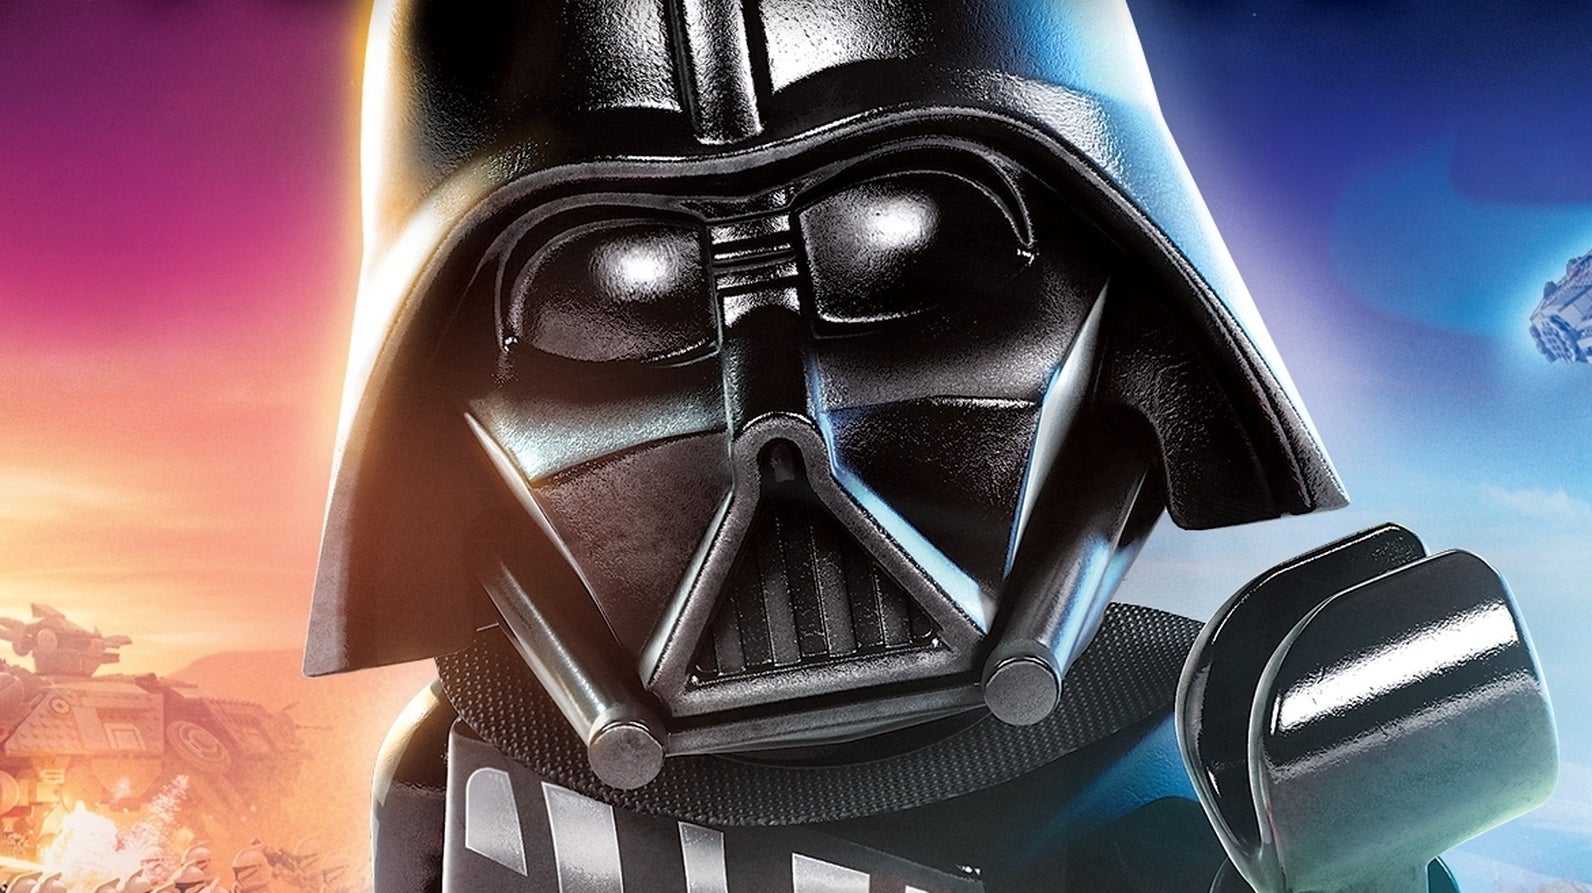 Immagine di Lego Star Wars: The Skywalker Saga è stato rinviato a data da destinarsi